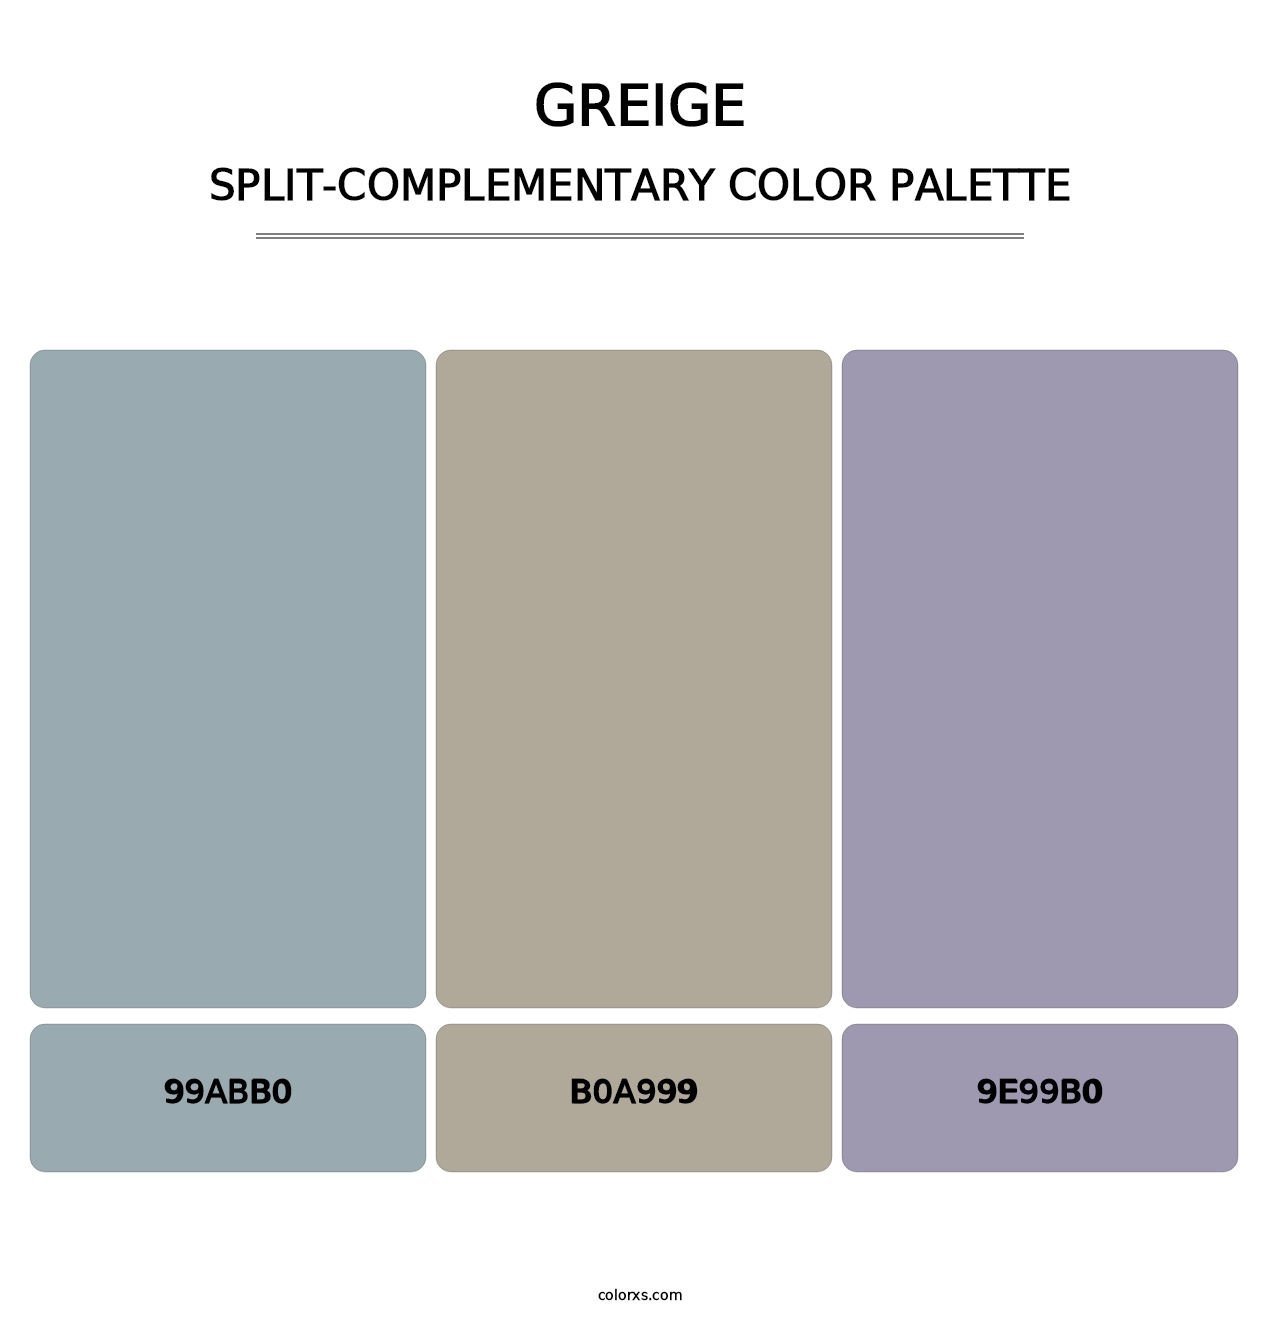 Greige - Split-Complementary Color Palette